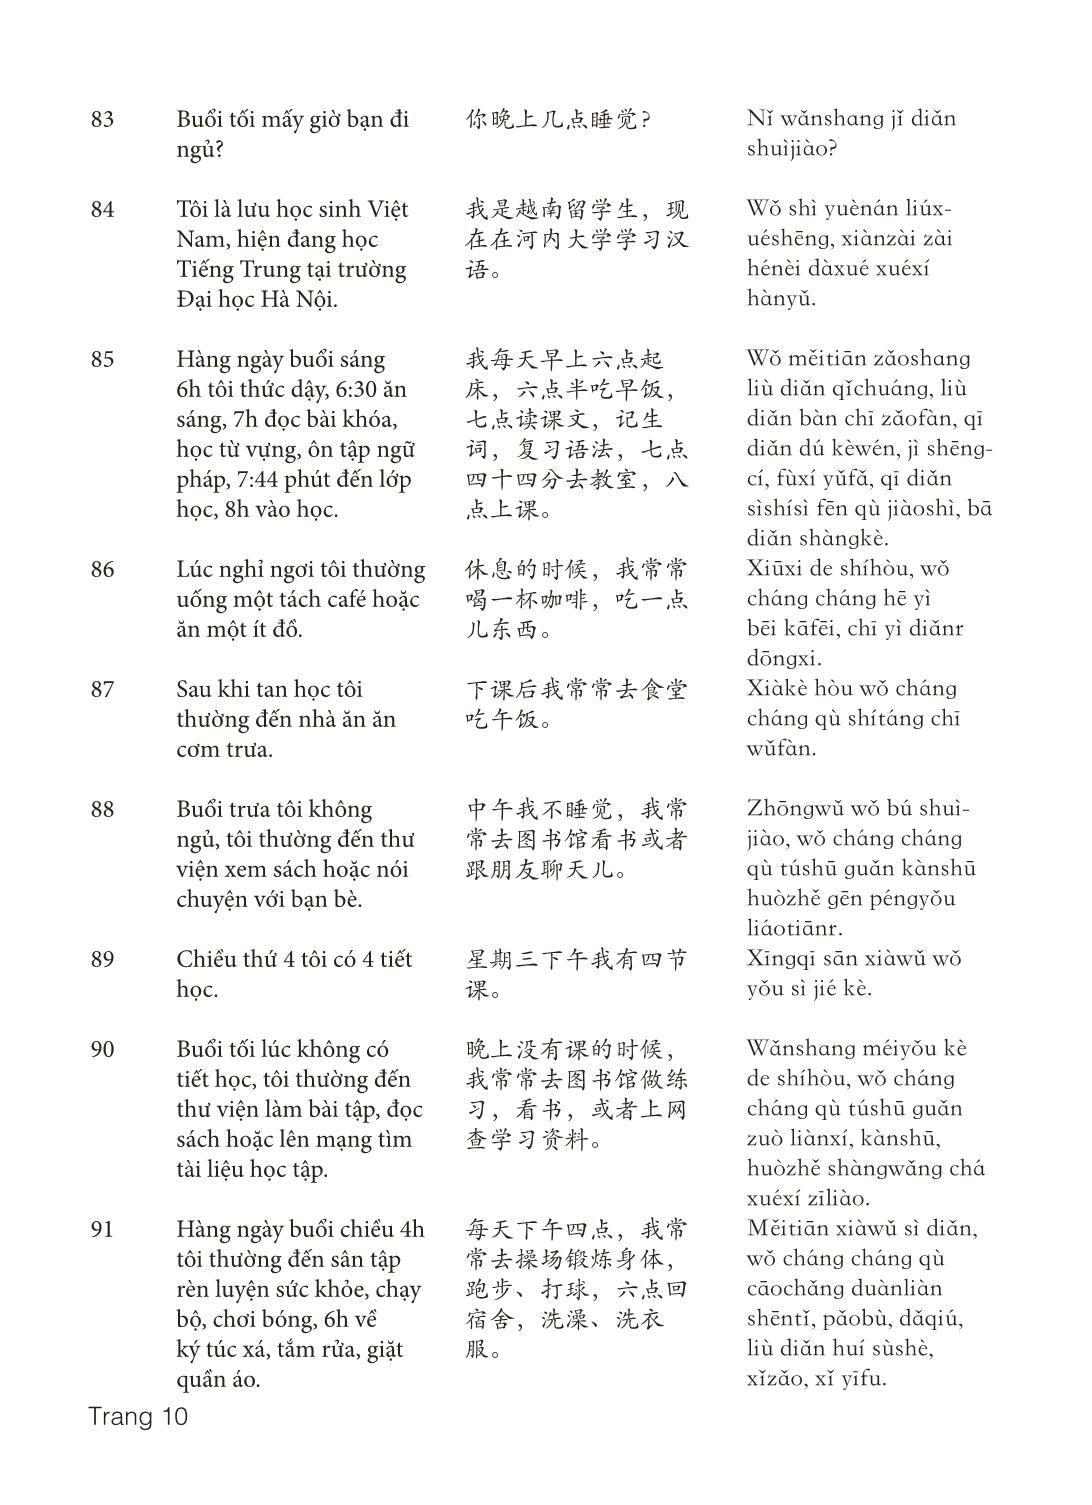 3000 Câu đàm thoại tiếng Hoa - Phần 5 trang 10